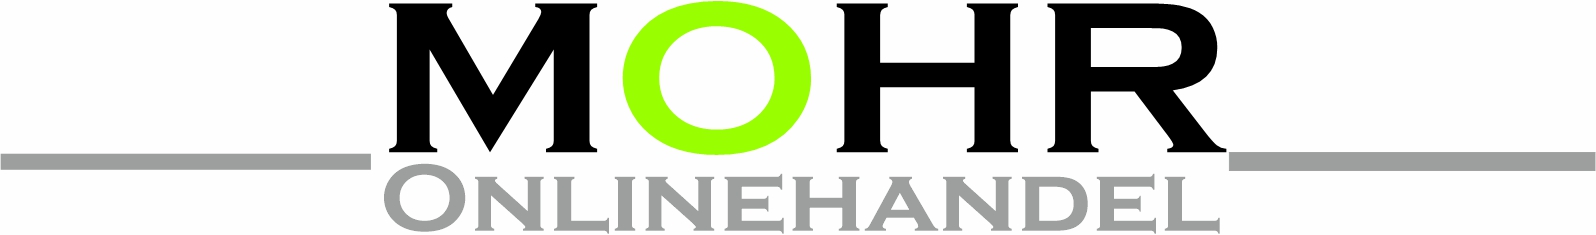 Mohr Onlinehandel-Logo